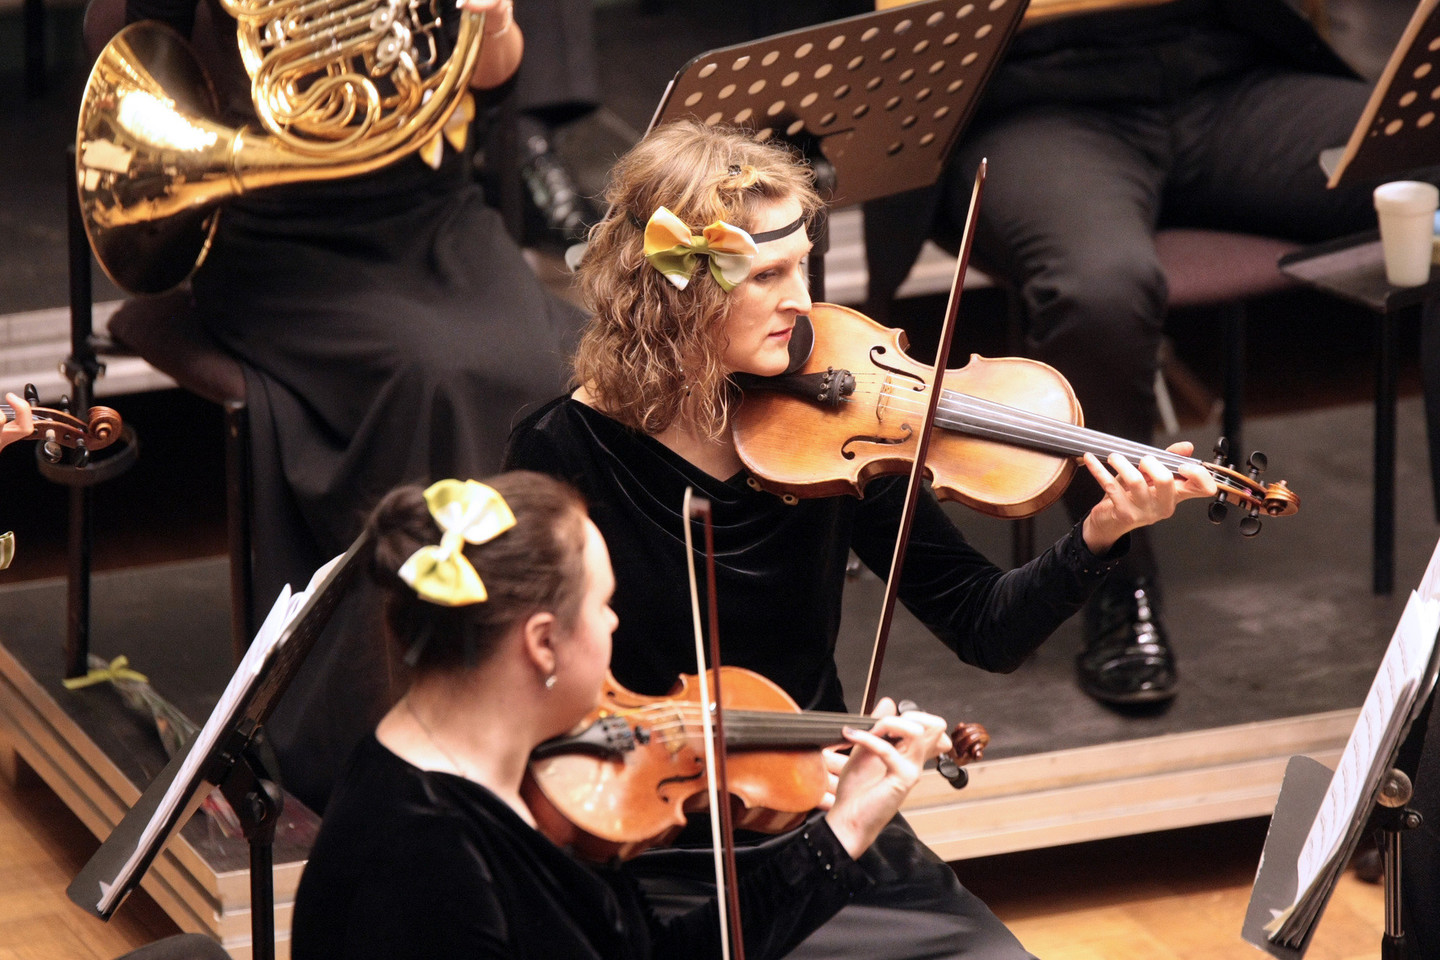 Kauno miesto simfoninis orkestras jubiliejiniame koncerte žiūrovams pateikė staigmeną – pasipuošė spalvingomis peteliškėmis.<br>P.Mantauto nuotr.